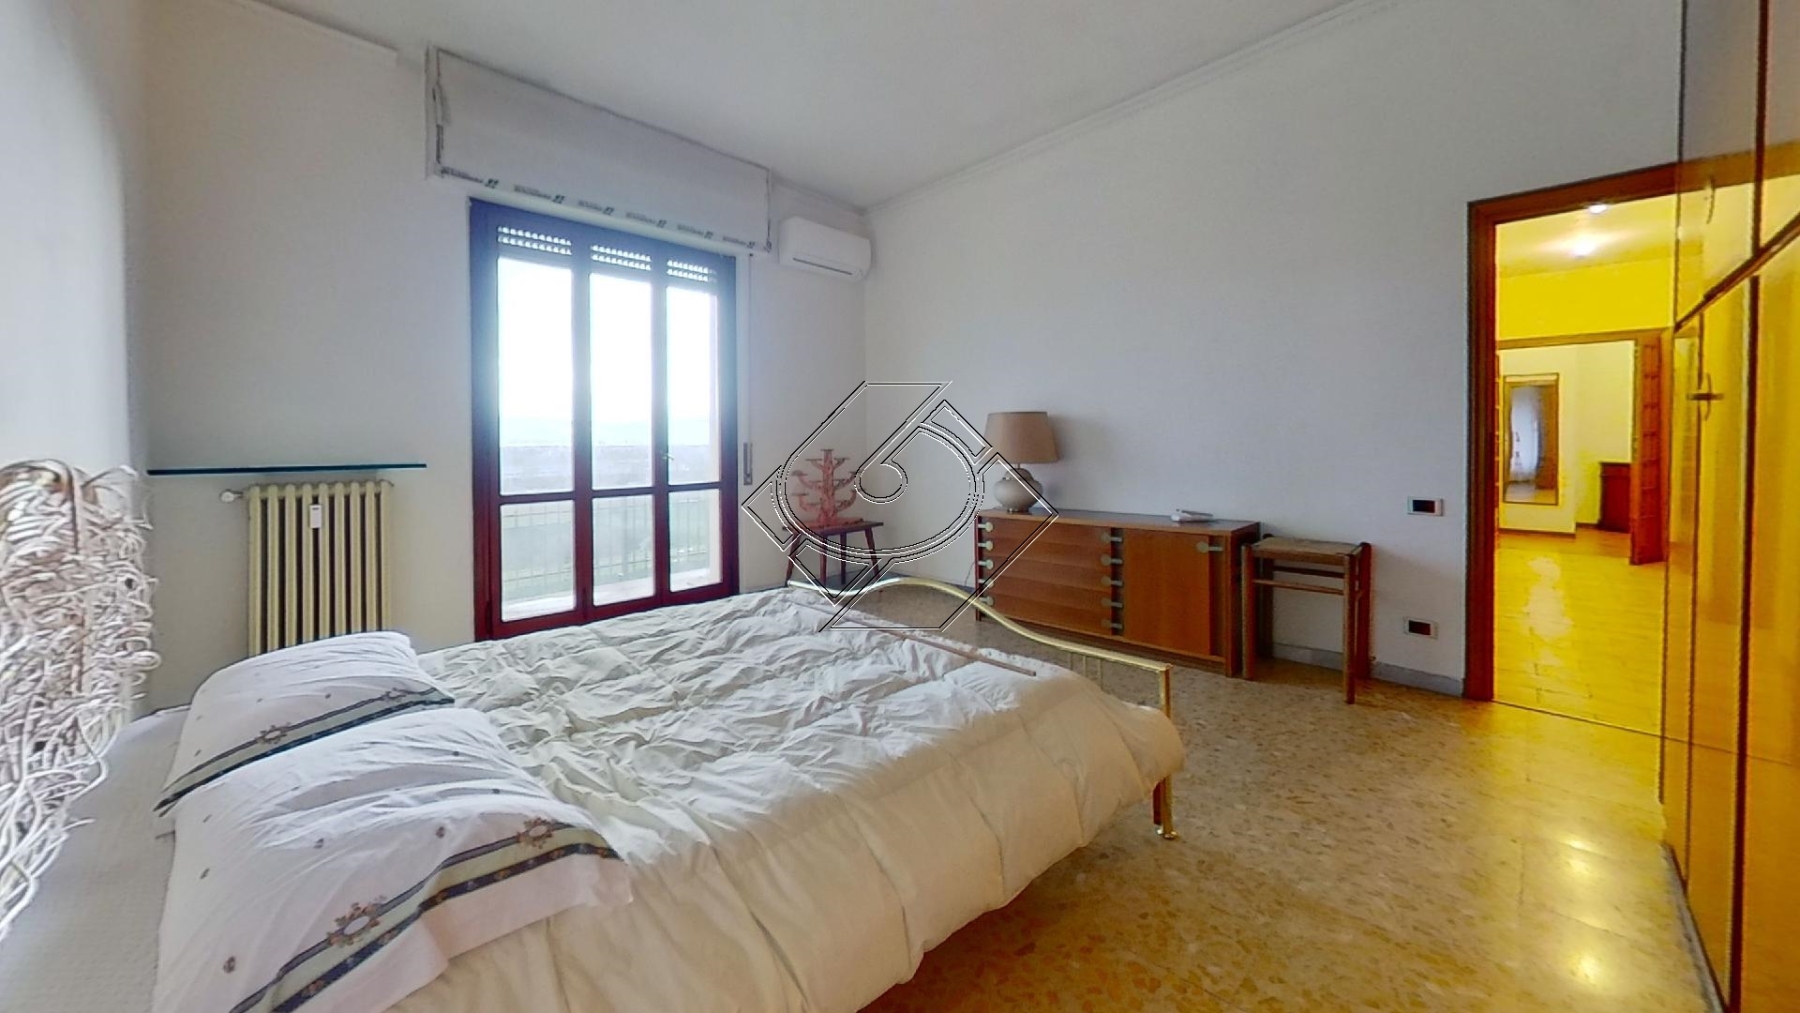 15A-Via-del-Pantano-Bedroom1